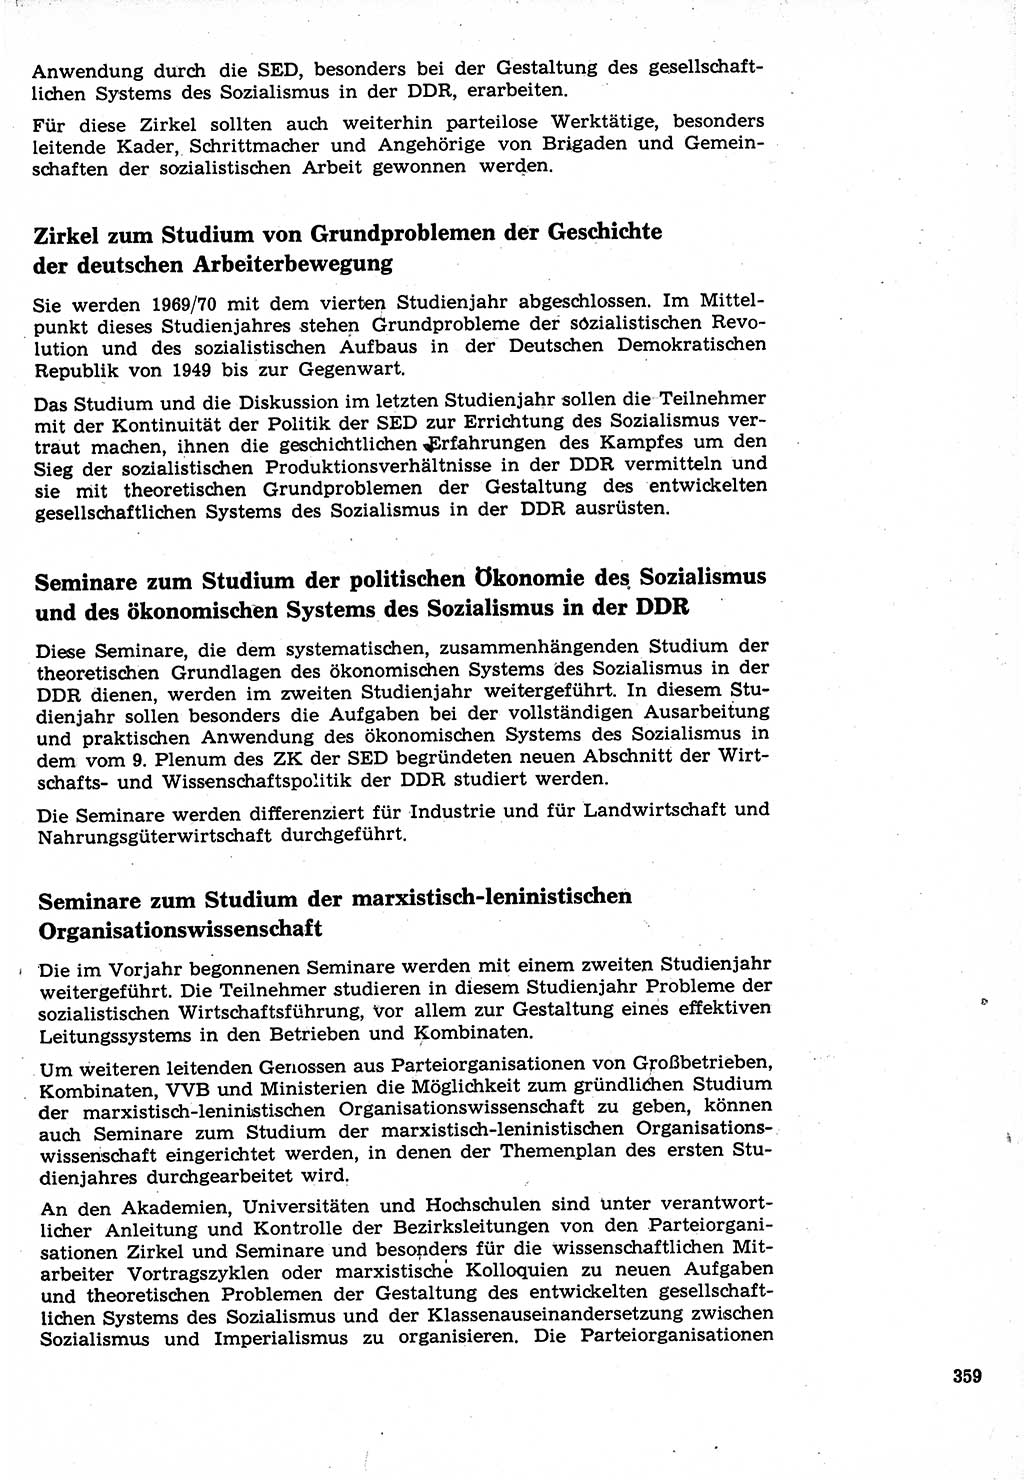 Neuer Weg (NW), Organ des Zentralkomitees (ZK) der SED (Sozialistische Einheitspartei Deutschlands) für Fragen des Parteilebens, 24. Jahrgang [Deutsche Demokratische Republik (DDR)] 1969, Seite 359 (NW ZK SED DDR 1969, S. 359)